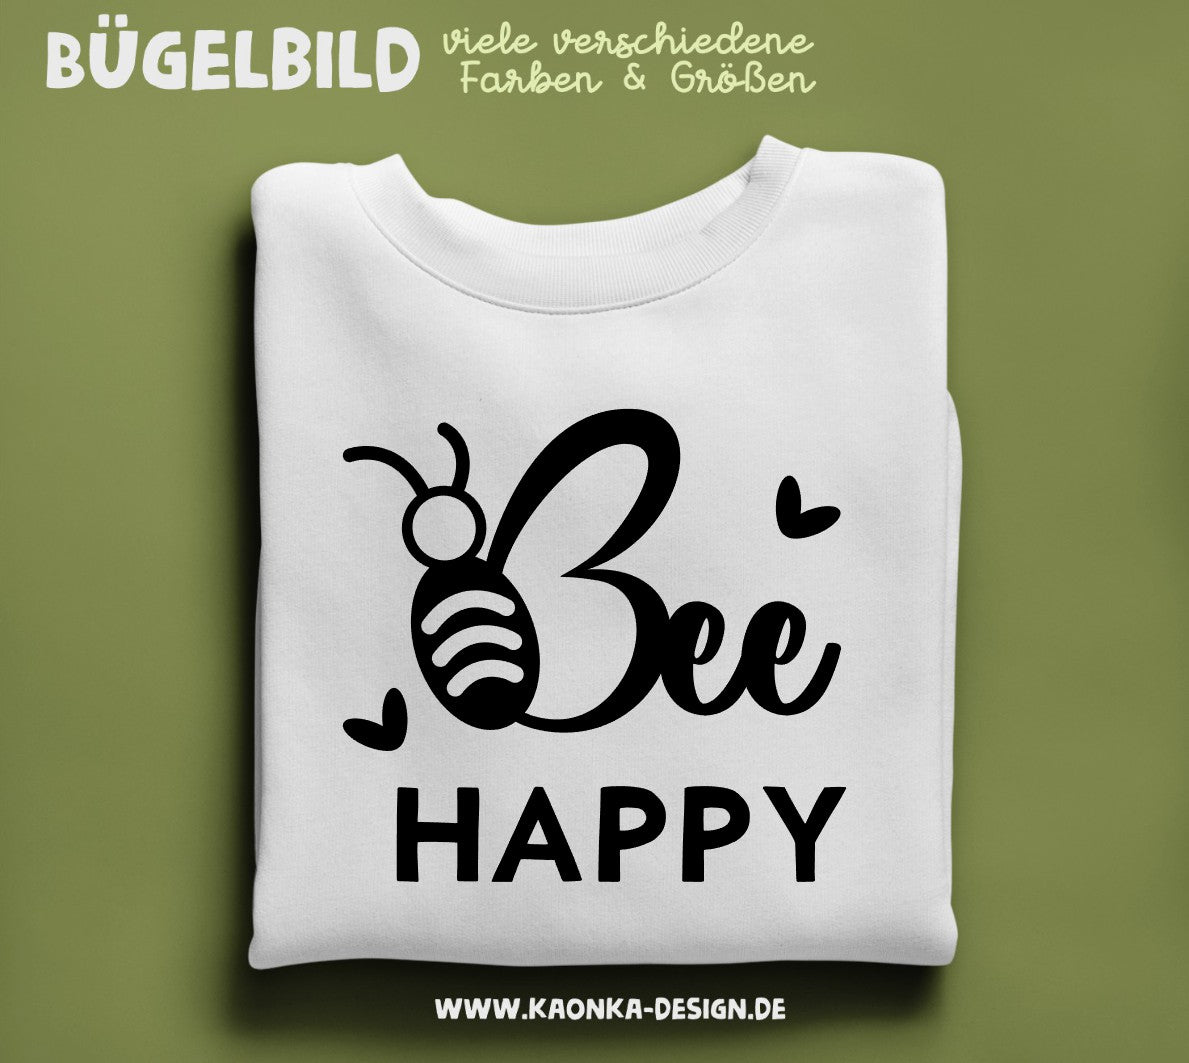 Bügelbild Bee Happy